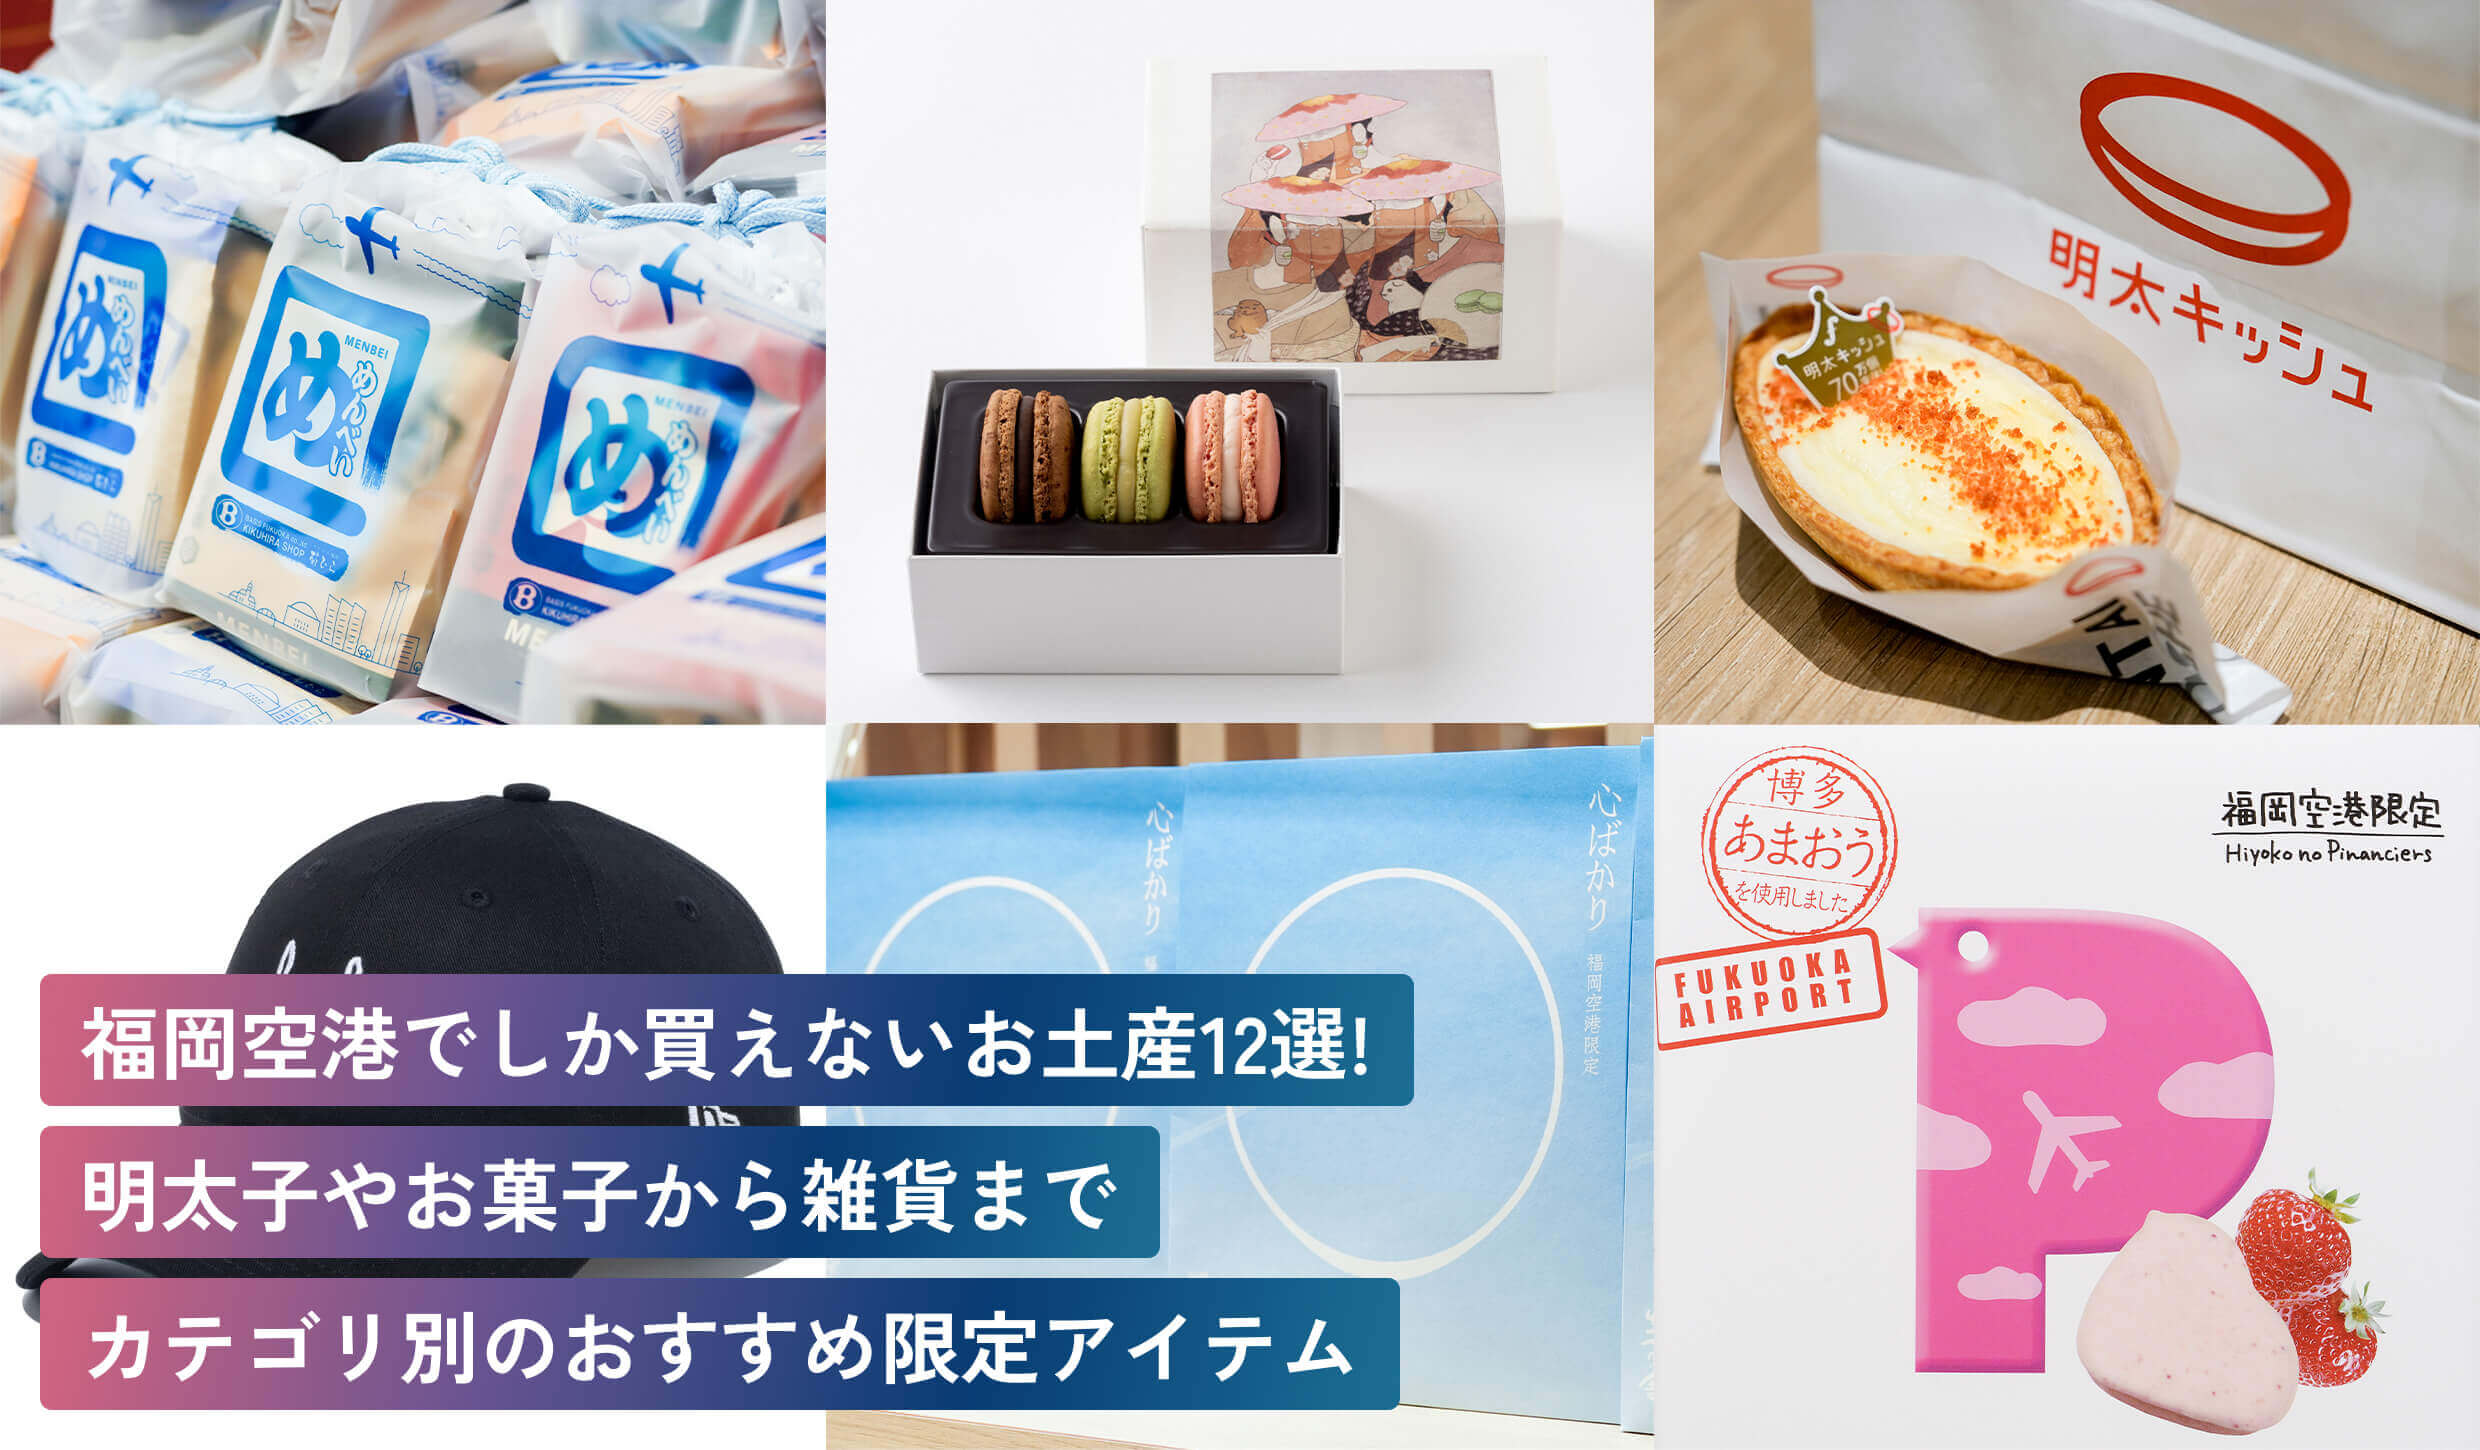 福岡空港でしか買えないお土産12選！
明太子やお菓子から雑貨まで
カテゴリ別のおすすめ限定アイテム 